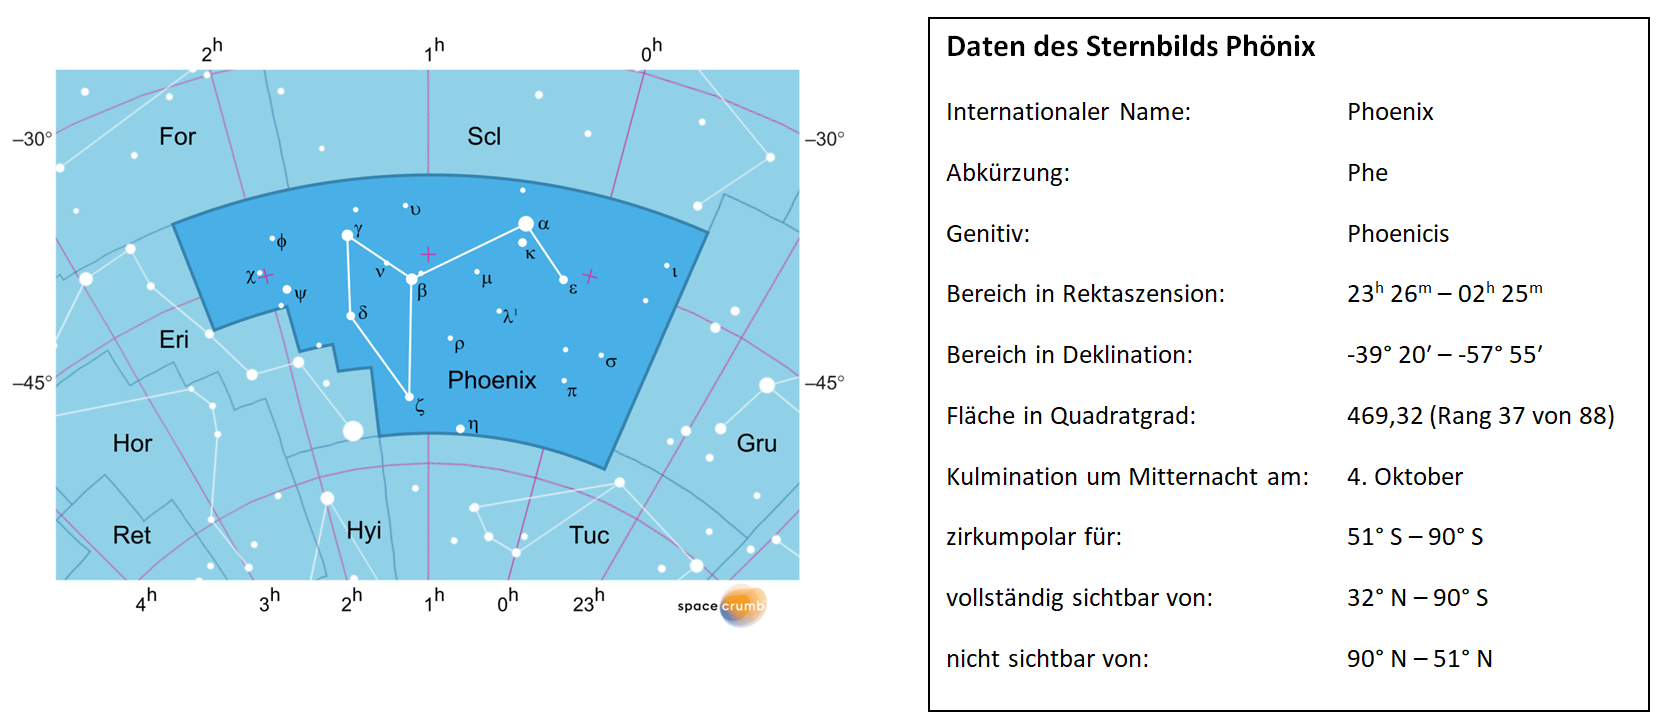 Links zeigt eine mit Koordinaten versehene Karte eines Himmelsausschnitts weiße Sterne auf hellblauem Hintergrund. Die Fläche, die das Sternbild Phoenix einnimmt, ist dunkelblau hervorgehoben. Eine Tabelle rechts gibt wichtige Daten des Sternbilds Phoenix an.